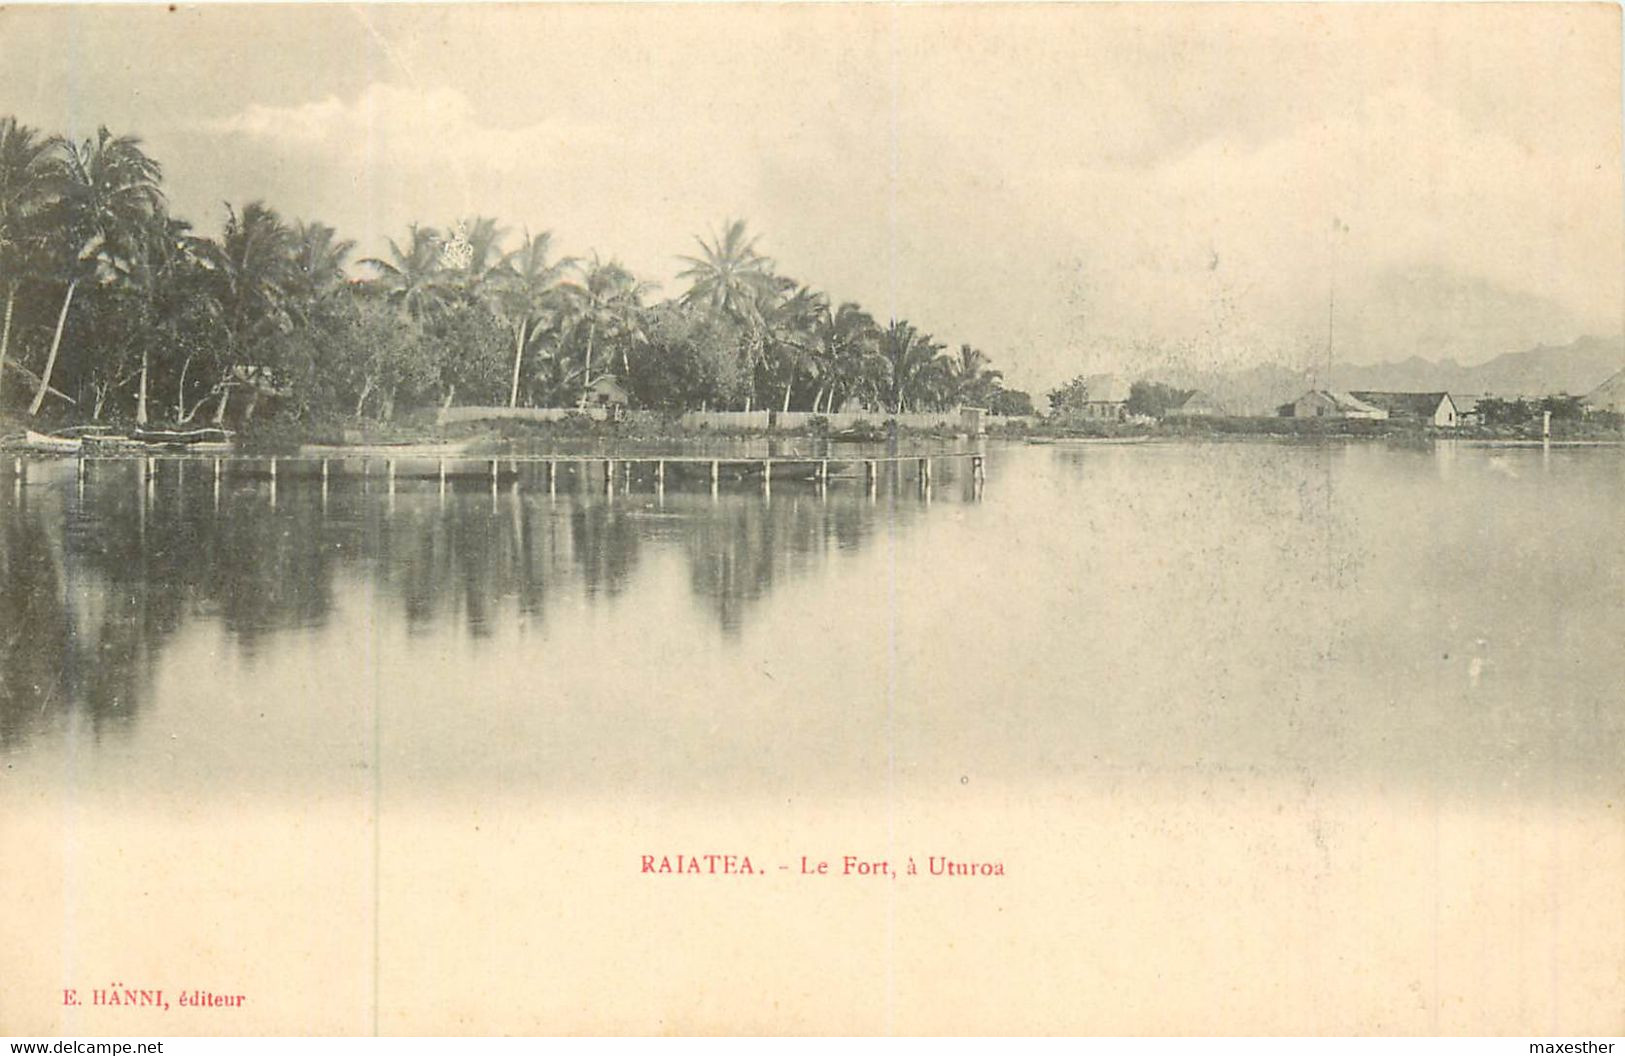 RAIATEA Le Fort à Uturoa - Polynésie Française